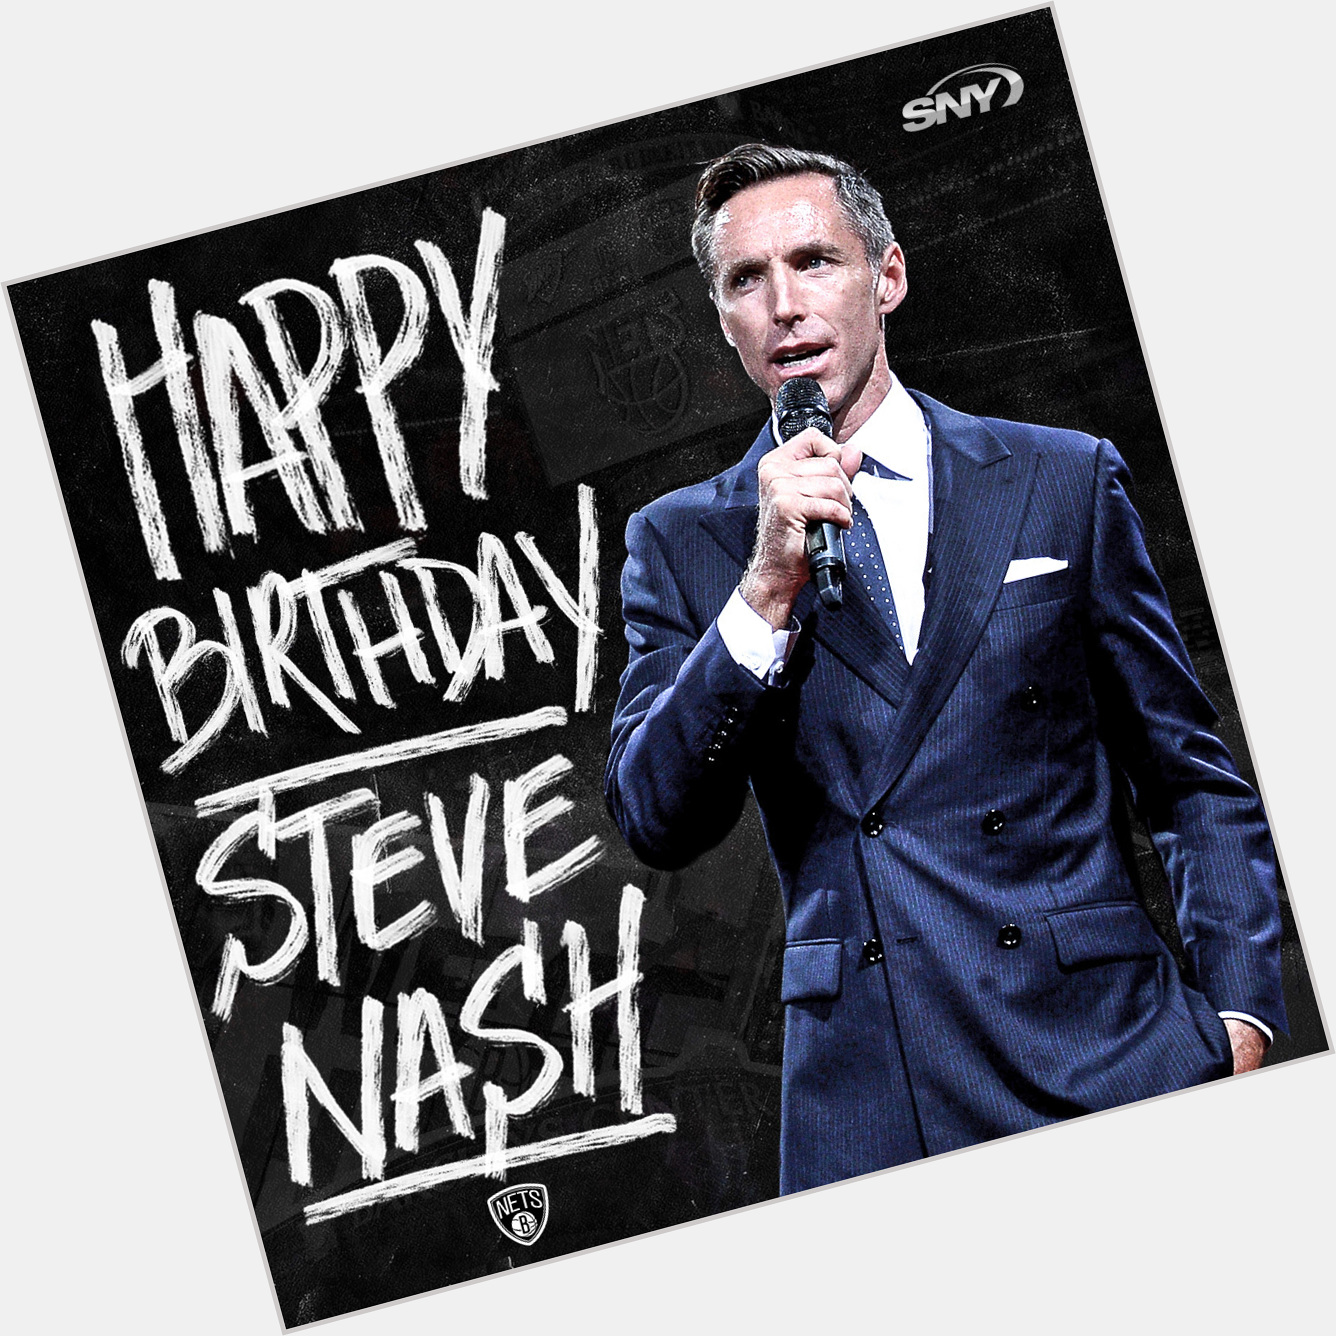 Happy 47th birthday to Steve Nash!  